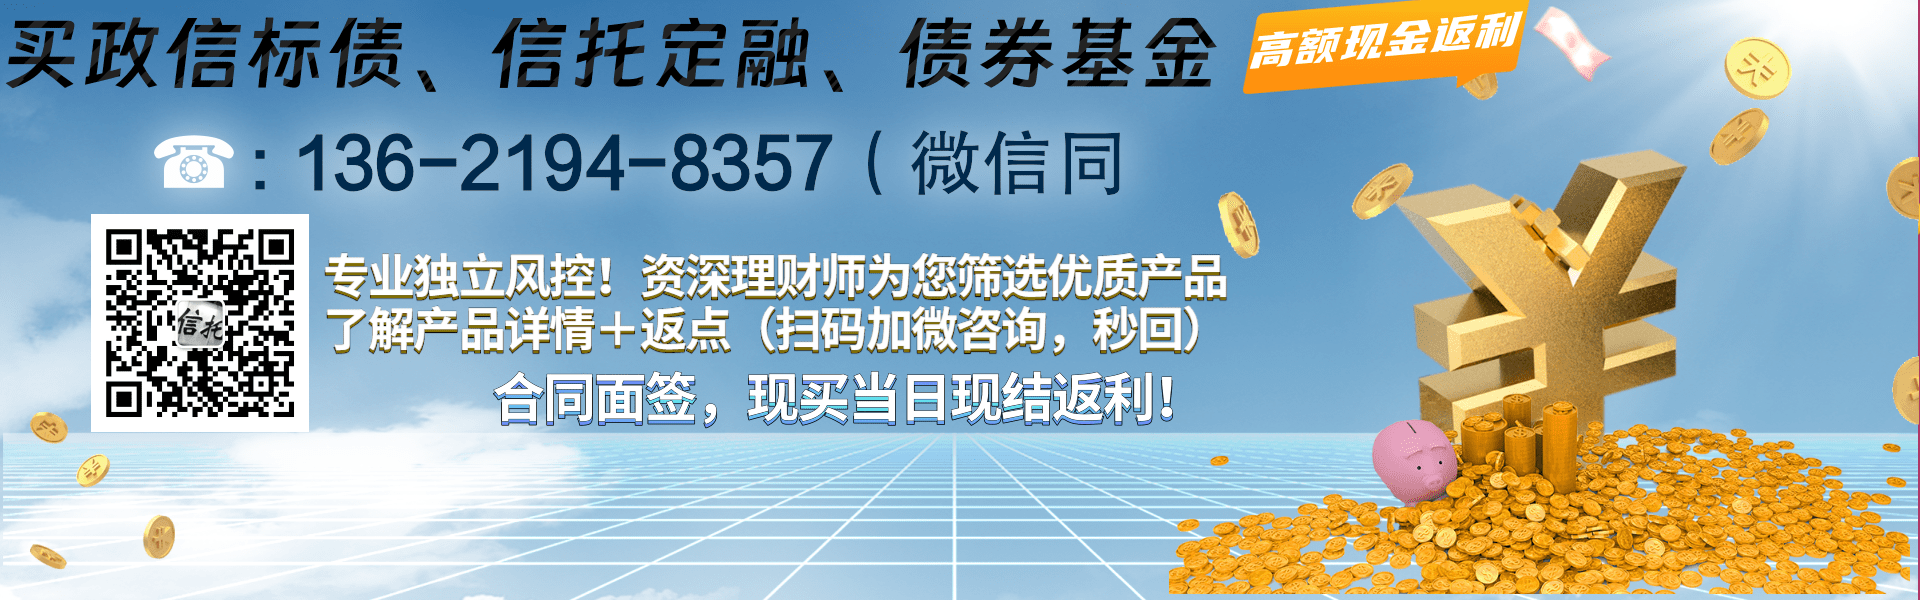 陕西-铜川市商业投资发展债权计划